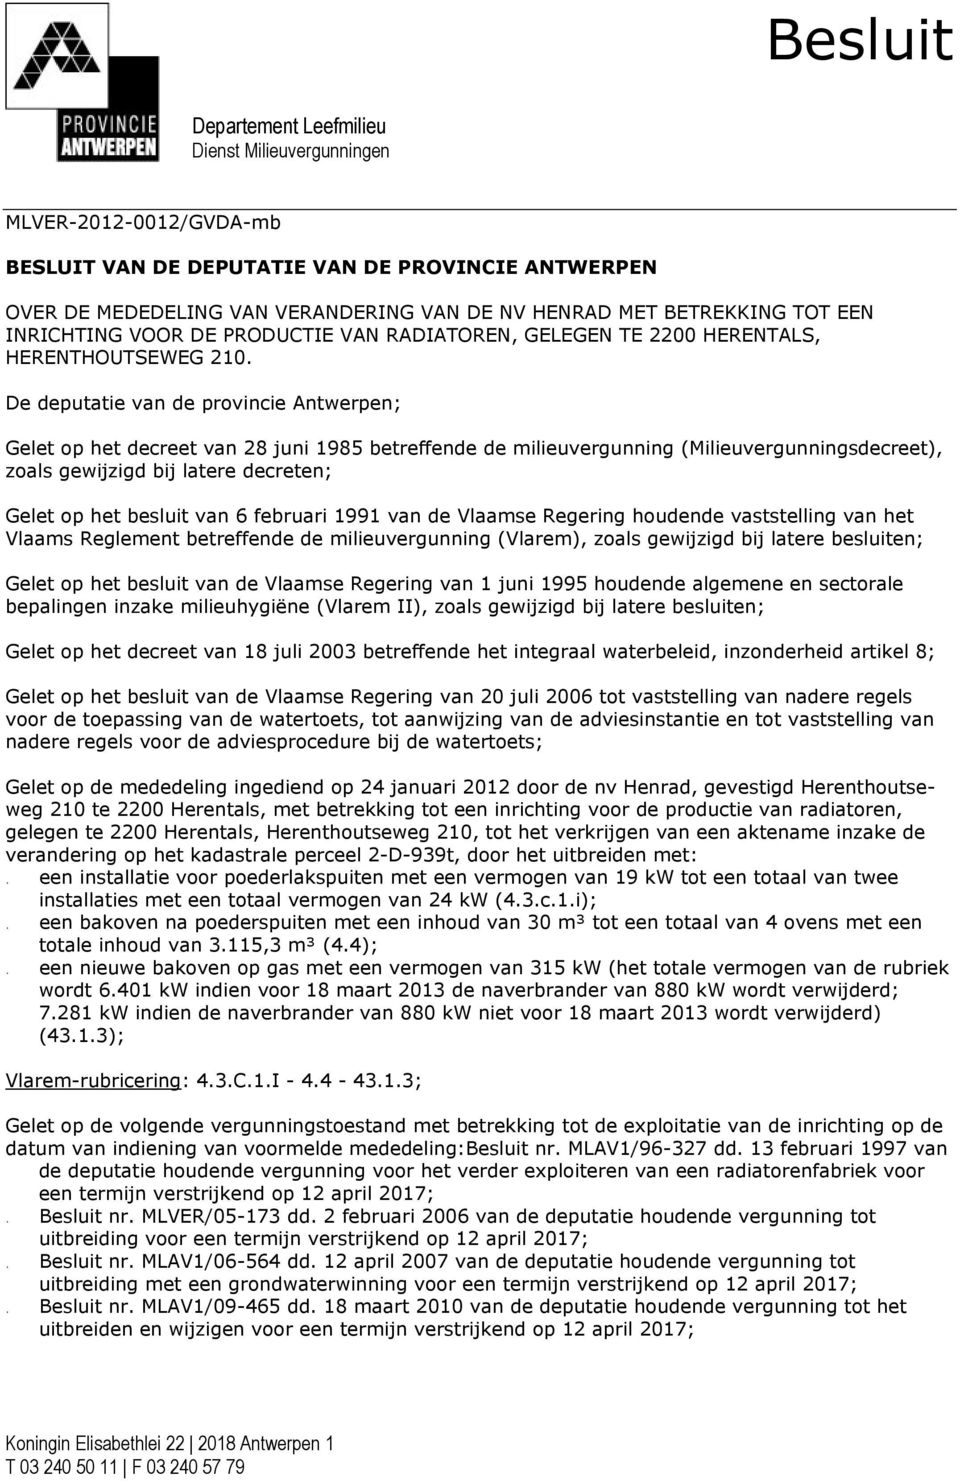 De deputatie van de provincie Antwerpen; Gelet op het decreet van 28 juni 1985 betreffende de milieuvergunning (Milieuvergunningsdecreet), zoals gewijzigd bij latere decreten; Gelet op het besluit